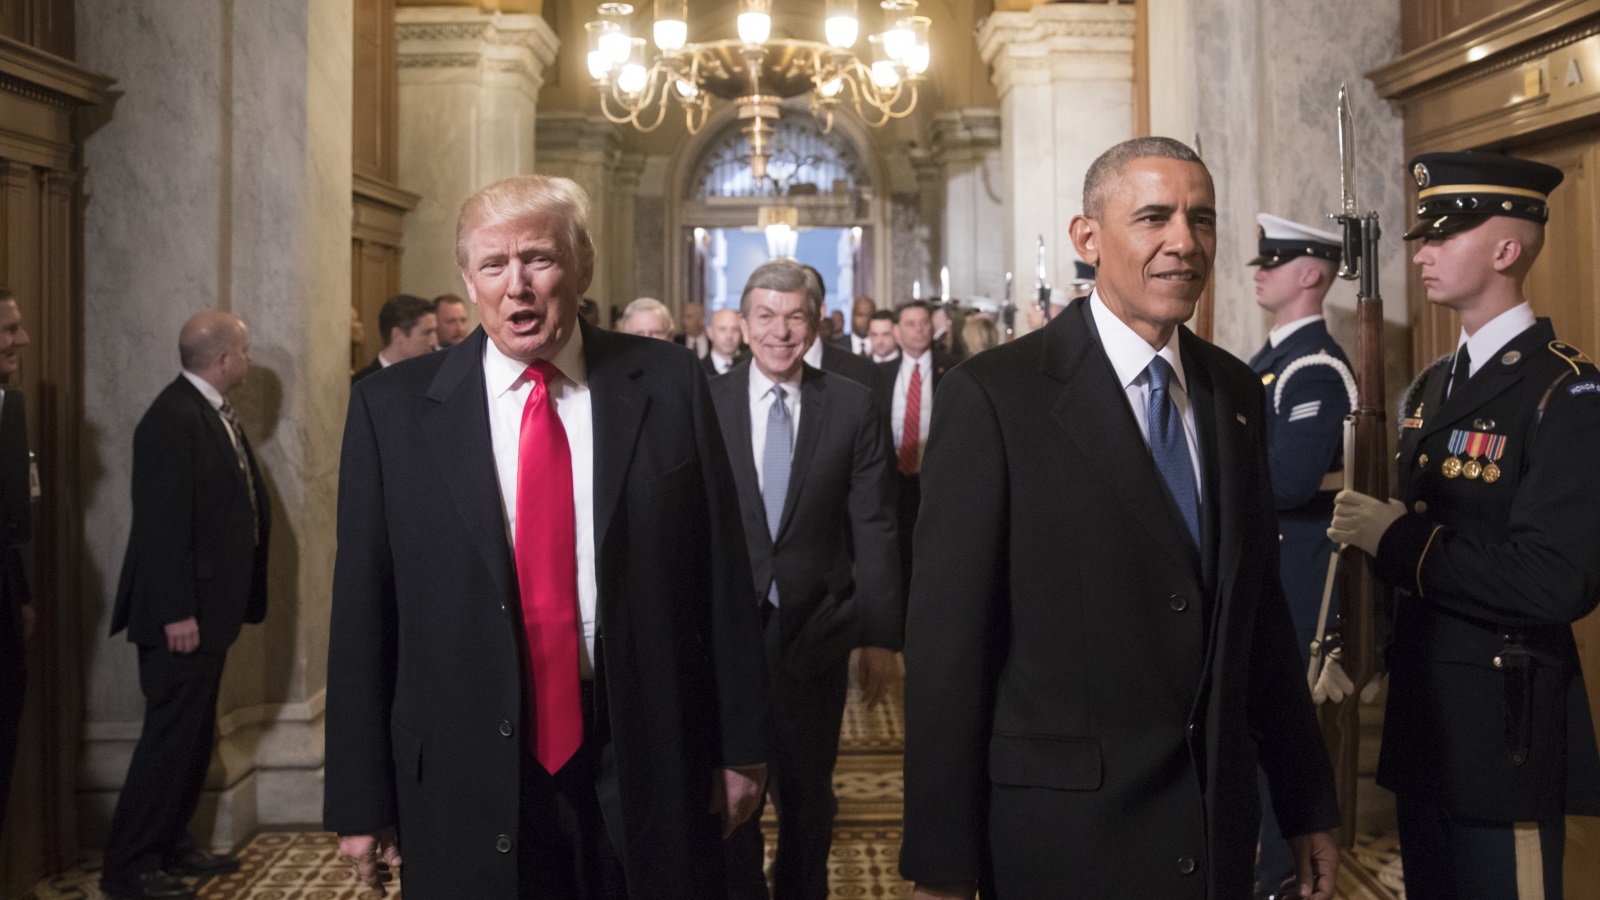 الرئيس الأميركي المنتخب دونالد ترمب يصل إلى موقع مراسم التنصيب في الكابيتول بواشنطن برفقة الرئيس السابق باراك أوباما (غيتي)